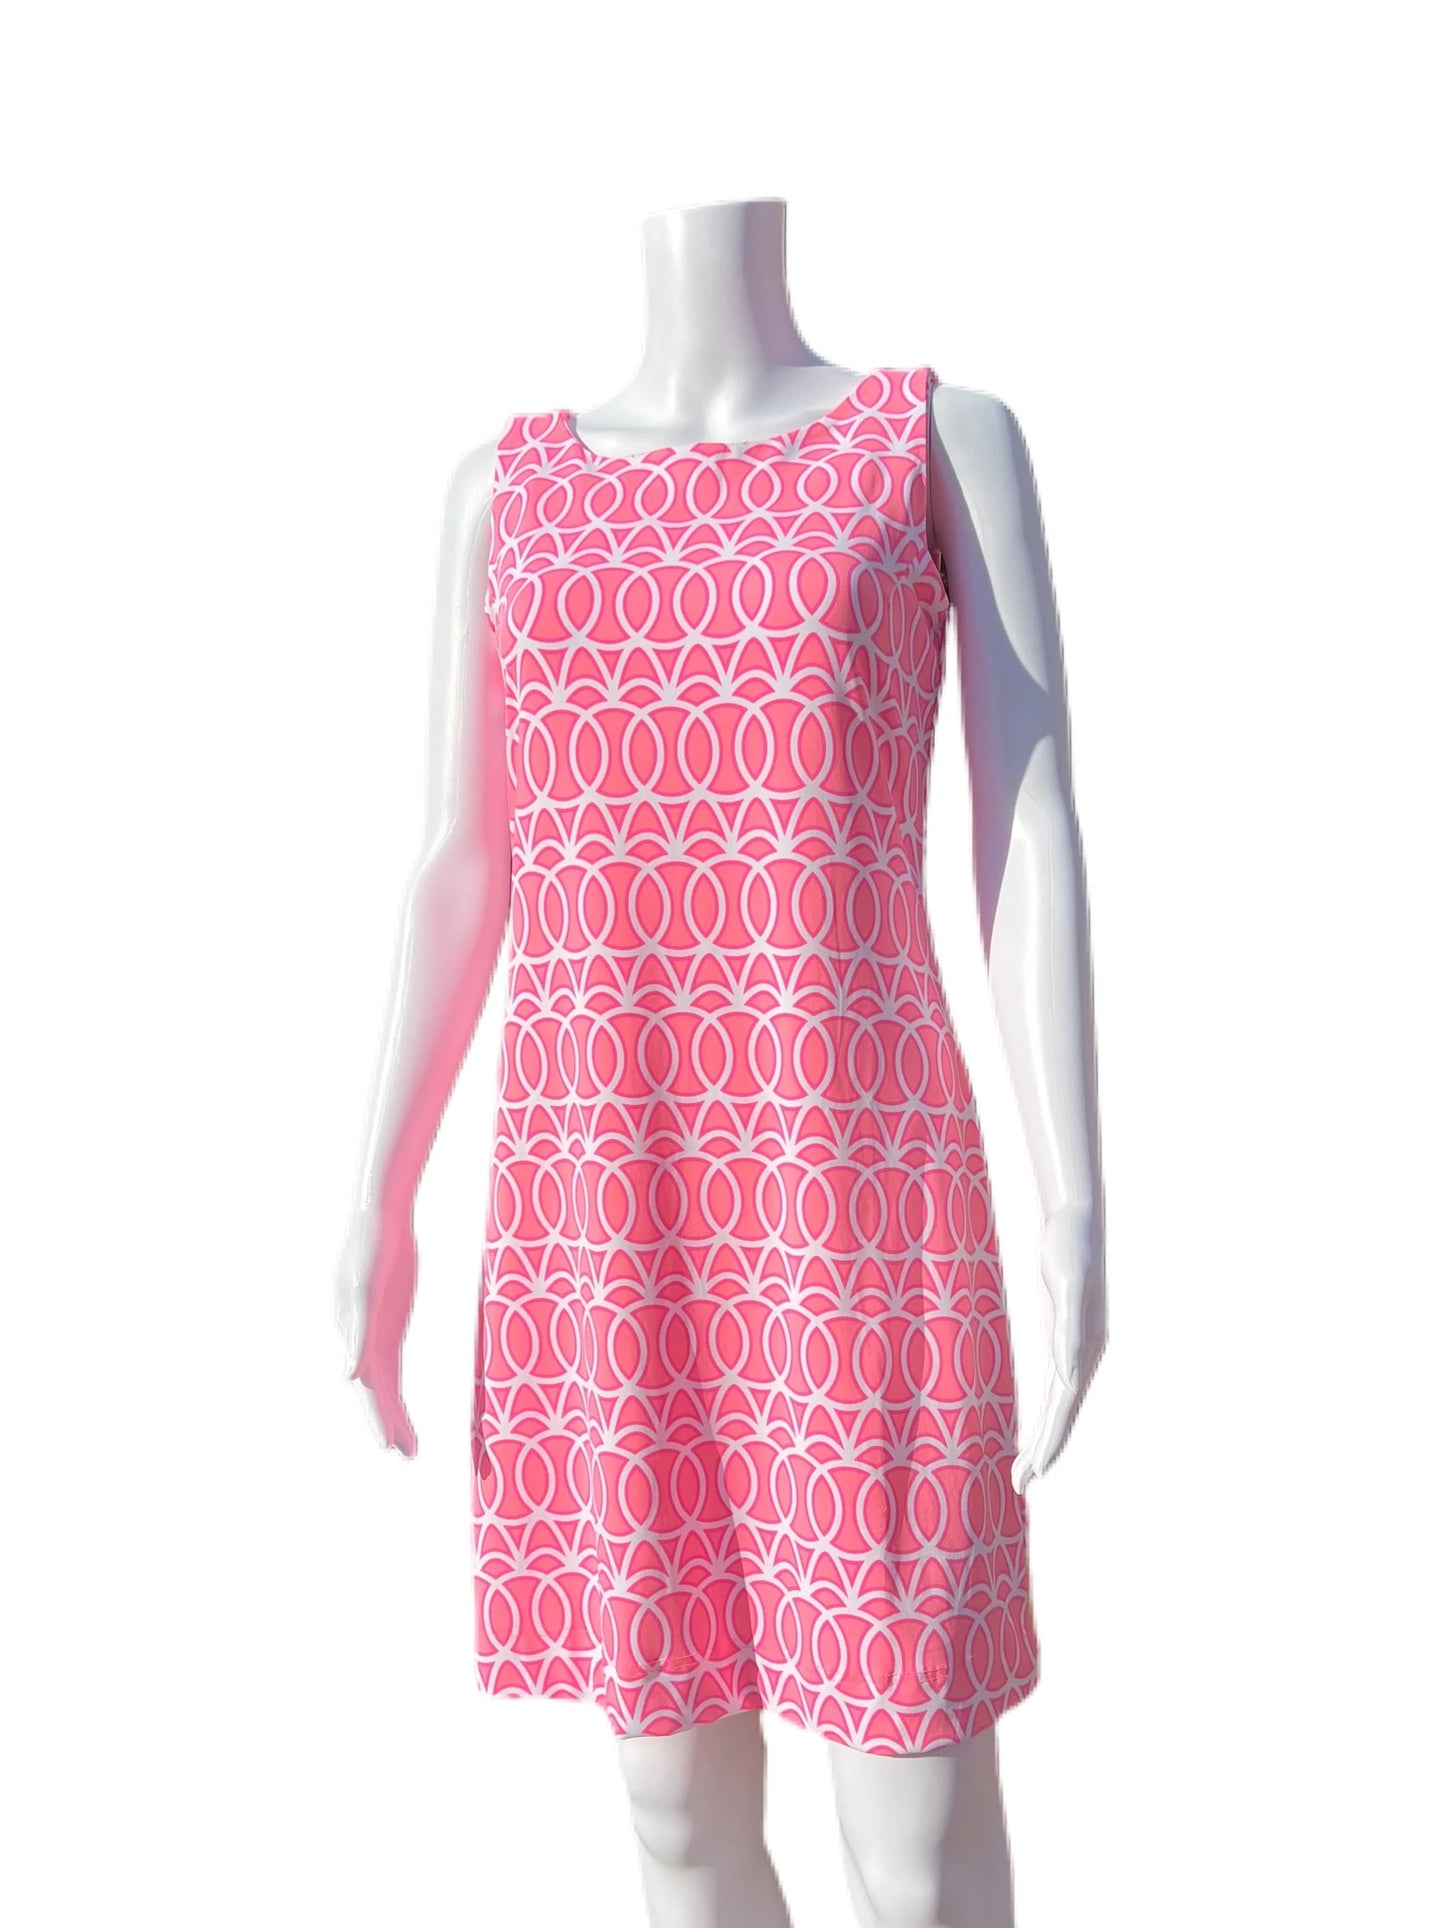 001- LuLu B Pink and White Sleeveless Dress